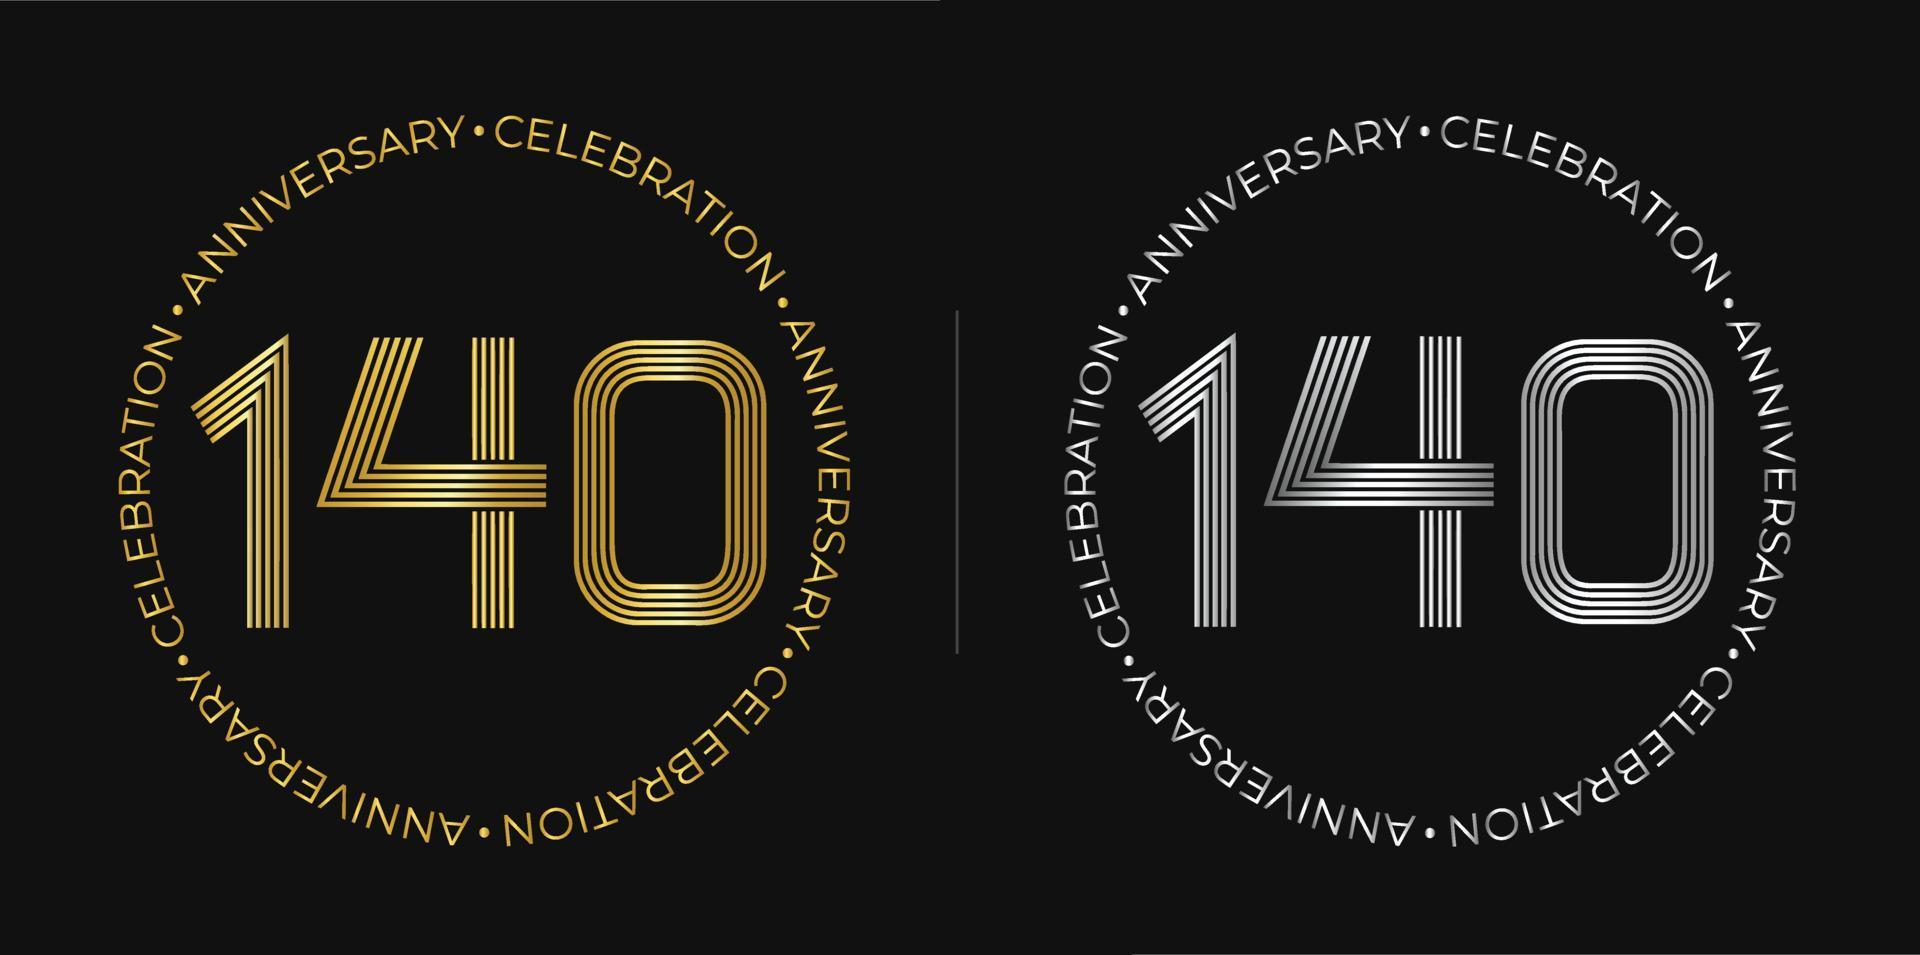 140 cumpleaños. banner de celebración de aniversario de ciento cuarenta años en colores dorado y plateado. logo circular con diseño de números originales en líneas elegantes. vector